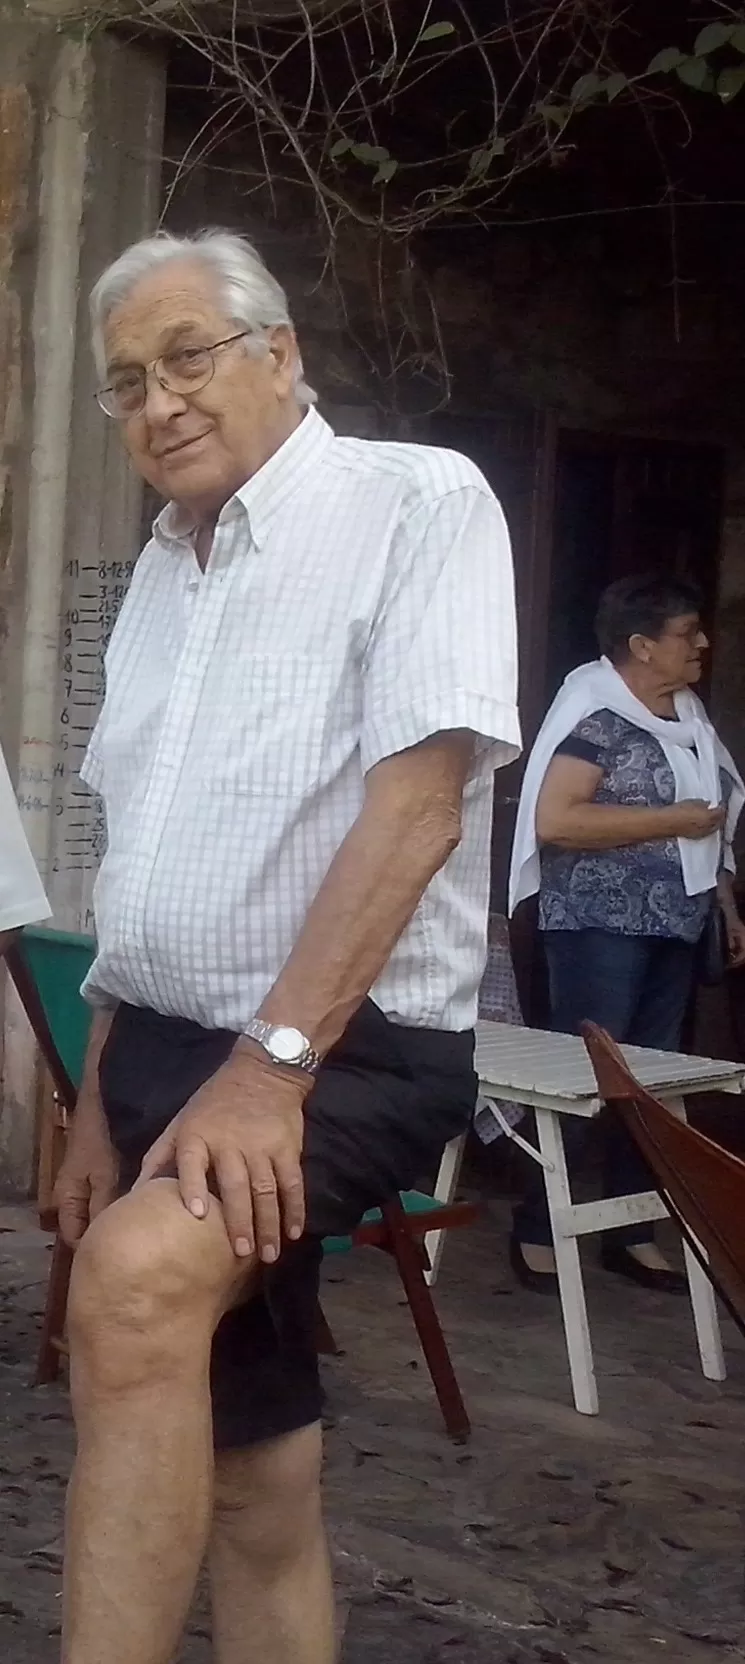 MIRADA CÓMPLICE. Roberto García en su casa de San Javier. LA GACETA / ROBERTO ESPINOSA